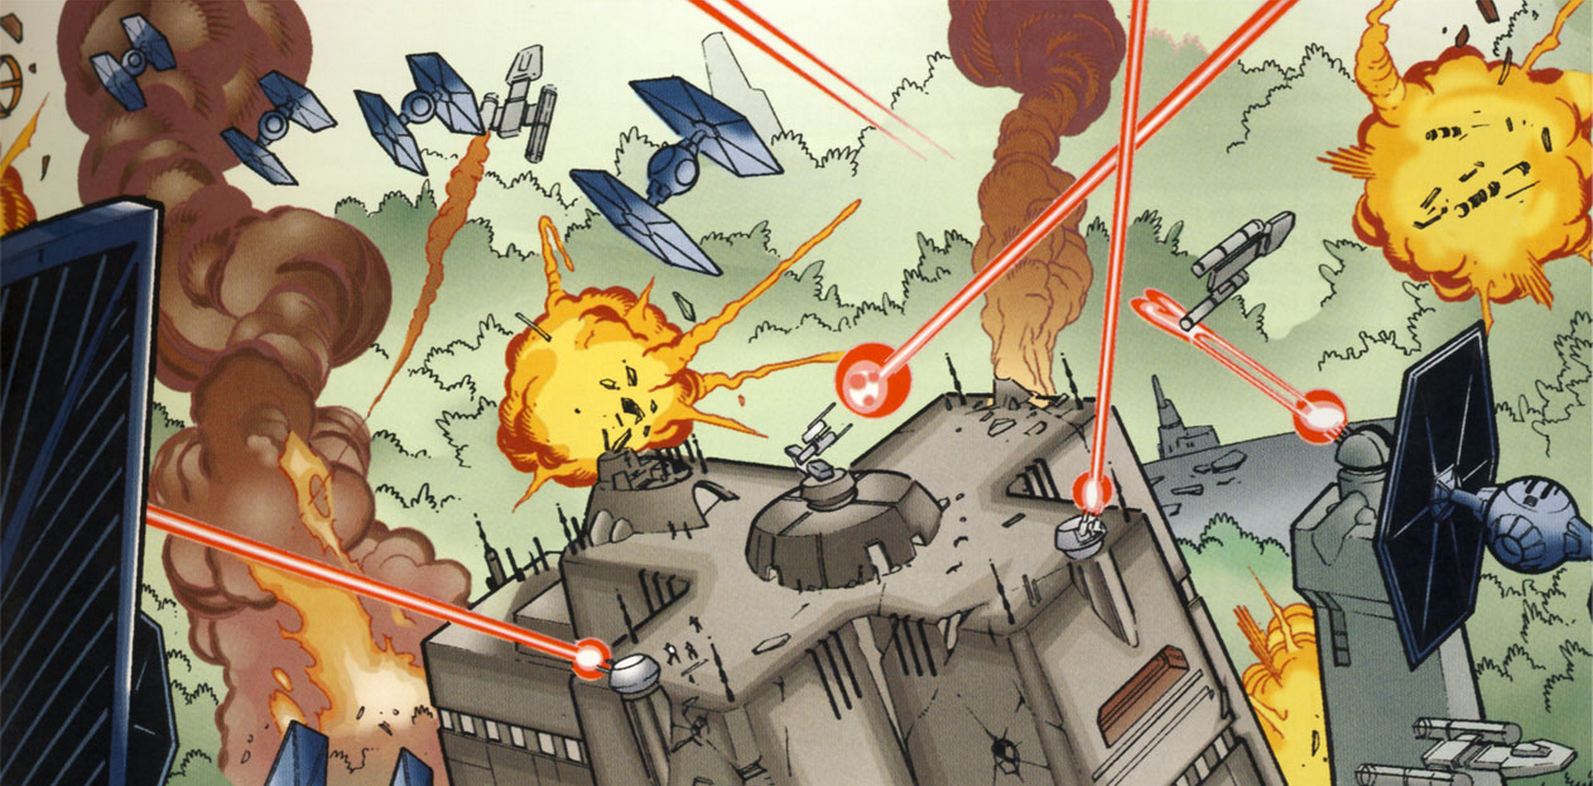 Les forces du 181ème Escadron ont détruit les escadrons rebelles dans le ciel d'Ord Biniir